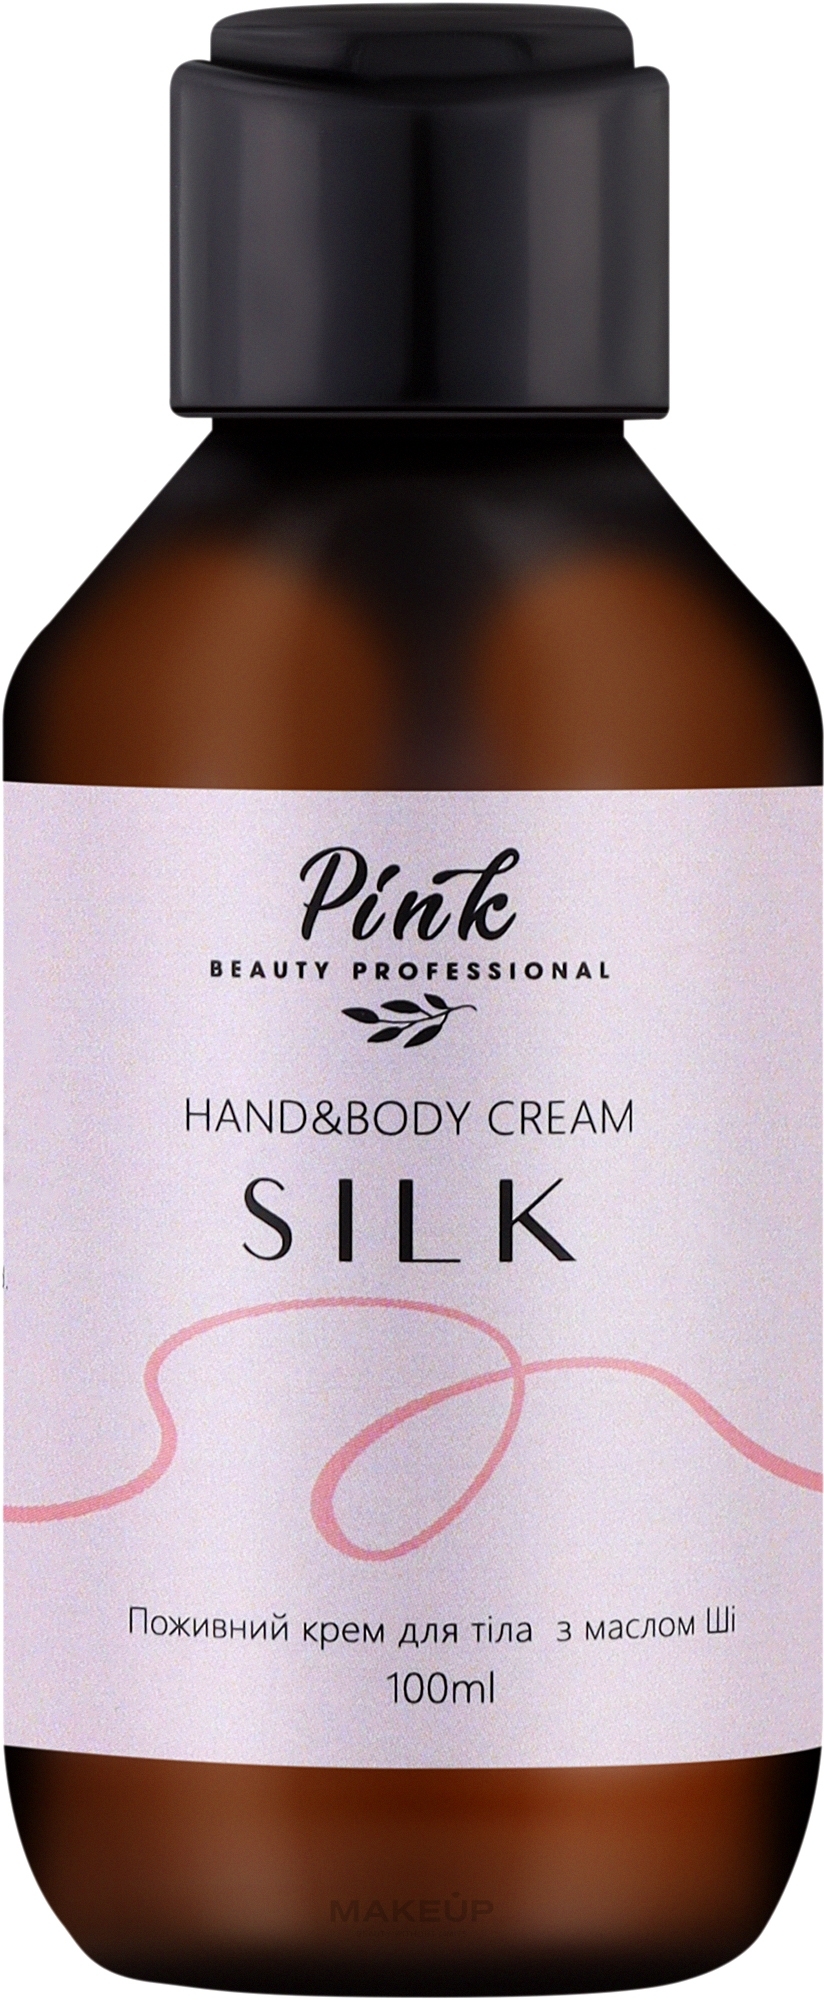 Питательный крем для тела и рук с маслом Ши "Silk" - Pink Hand & Body Cream — фото 100ml